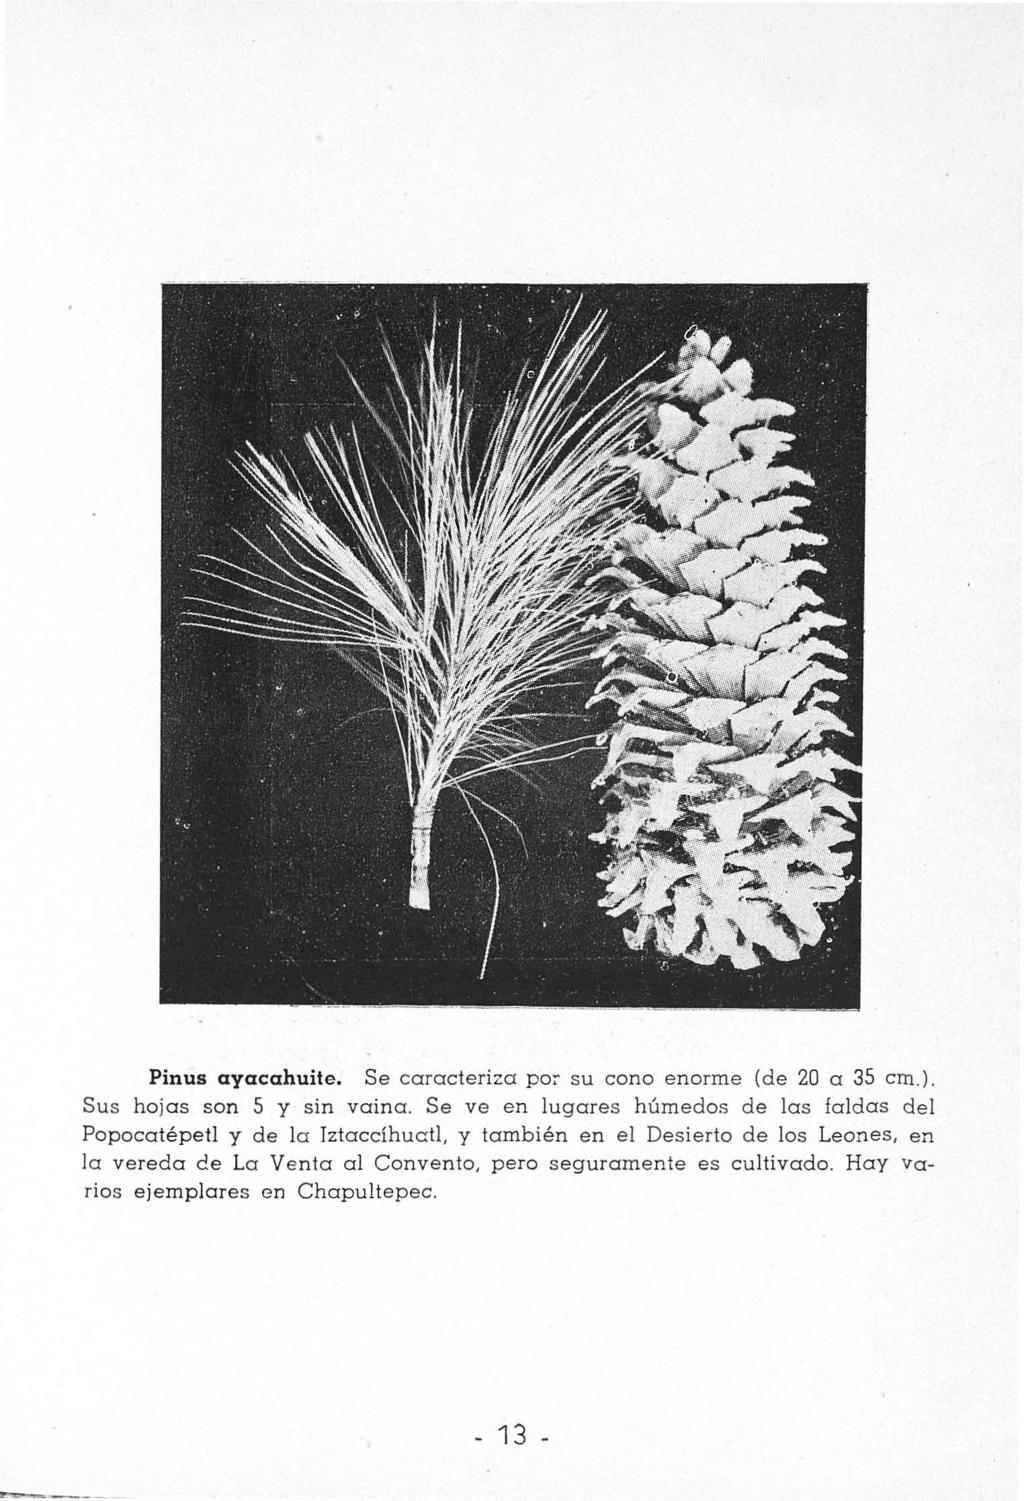 Pinus ayacahuite. Se caracteriza po~ su cono enorme (de 20 a 35 cm.). Sus hojas son 5 y sin vaina.